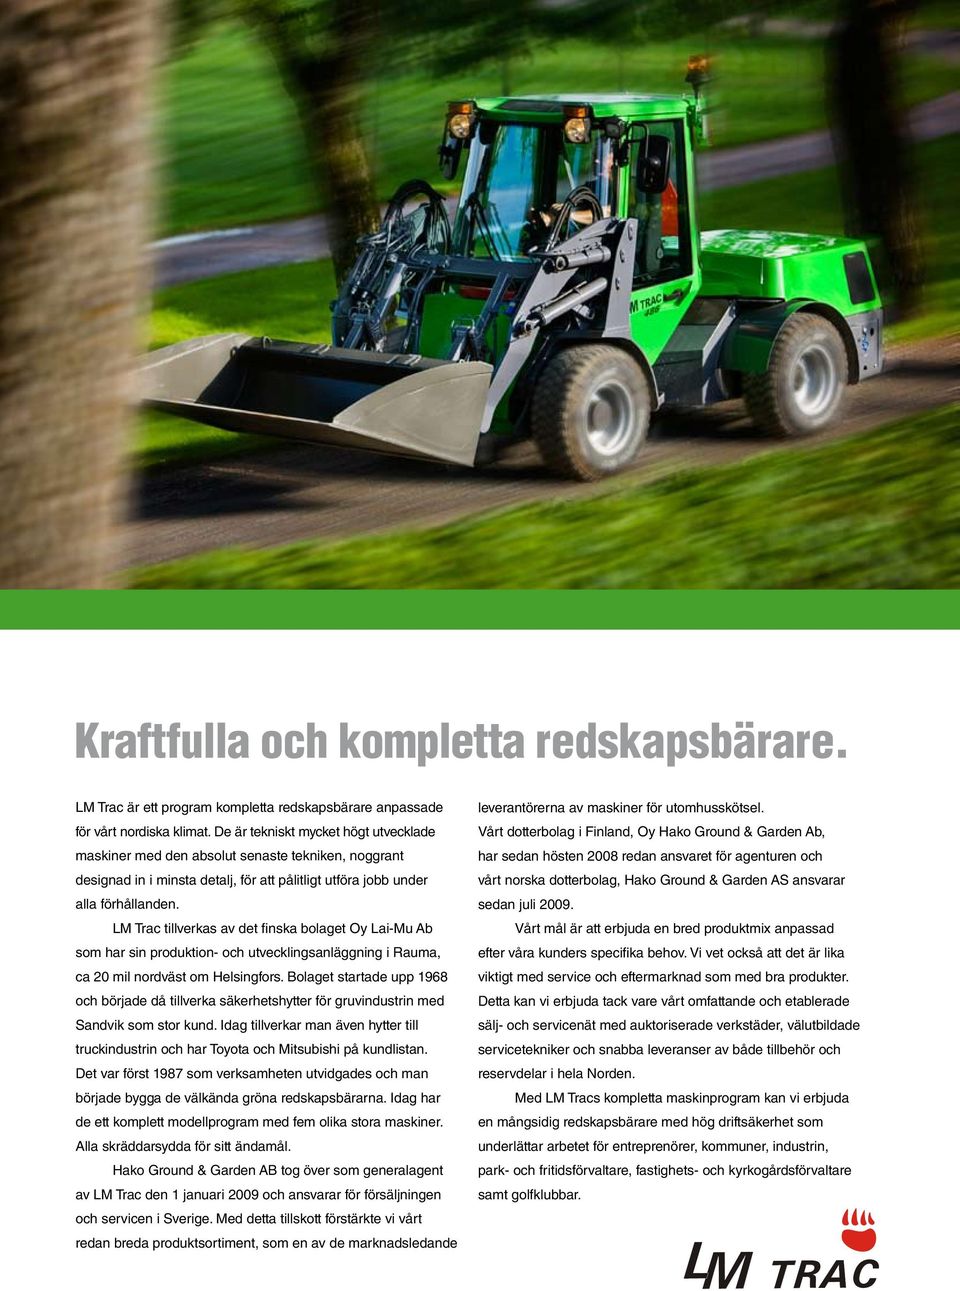 LM Trac tillverkas av det finska bolaget Oy Lai-Mu Ab som har sin produktion- och utvecklingsanläggning i Rauma, ca 20 mil nordväst om Helsingfors.